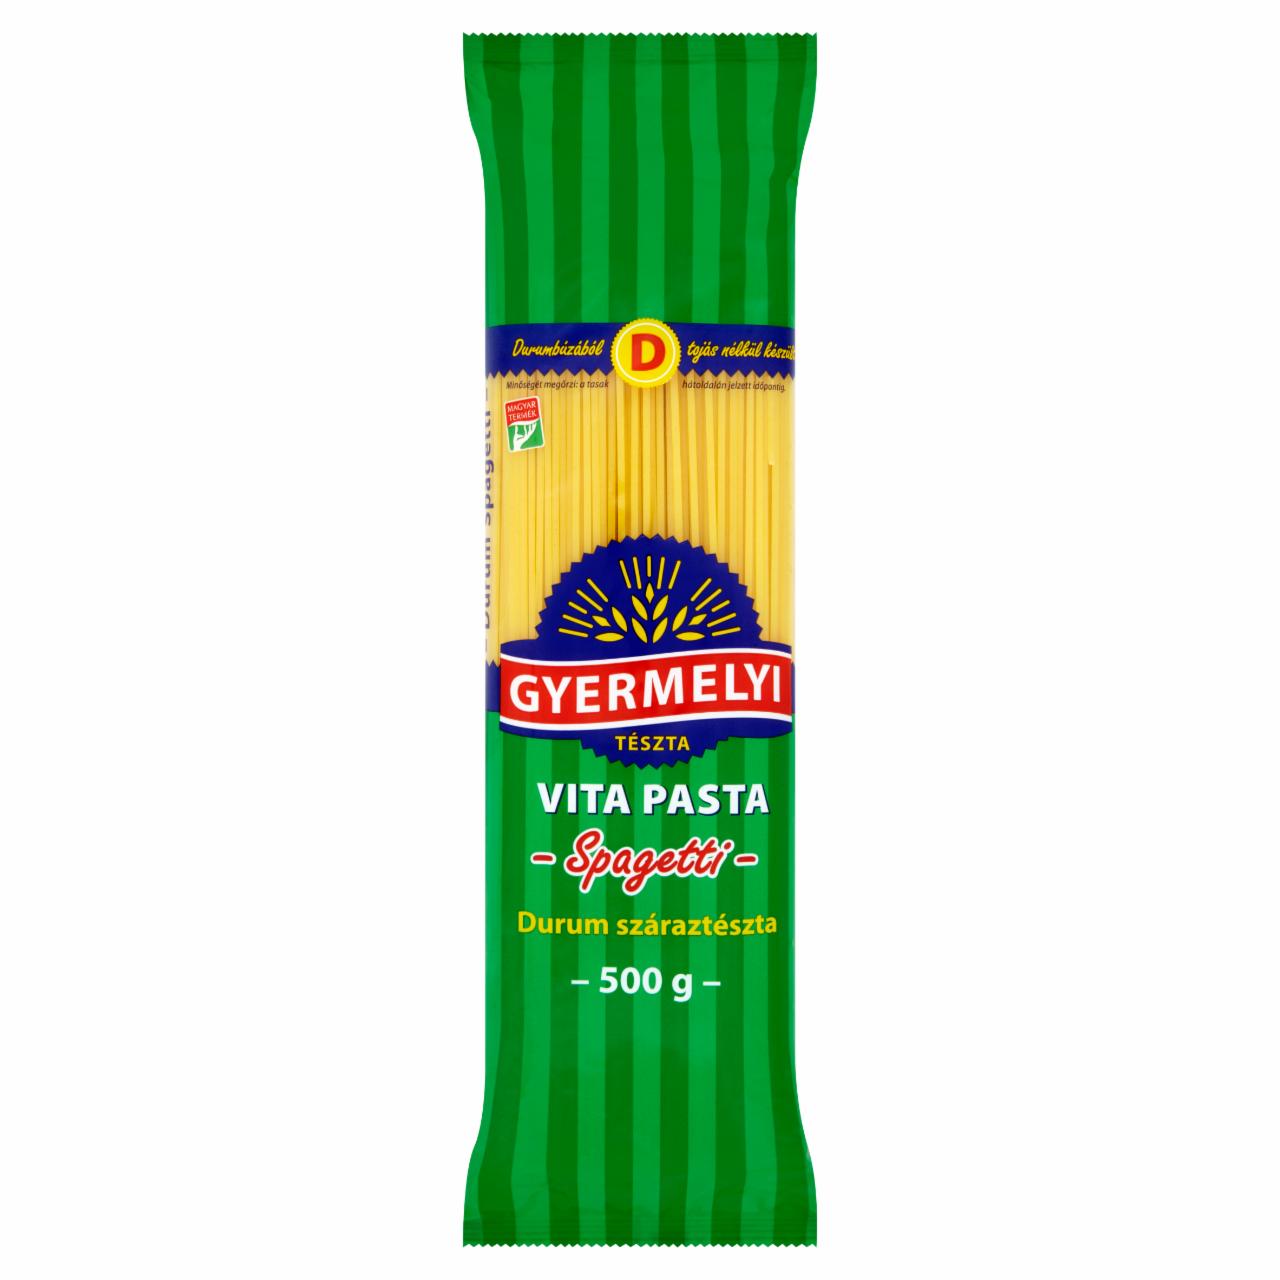 Képek - Gyermelyi Vita Pasta Spaghetti durum száraztészta 500 g